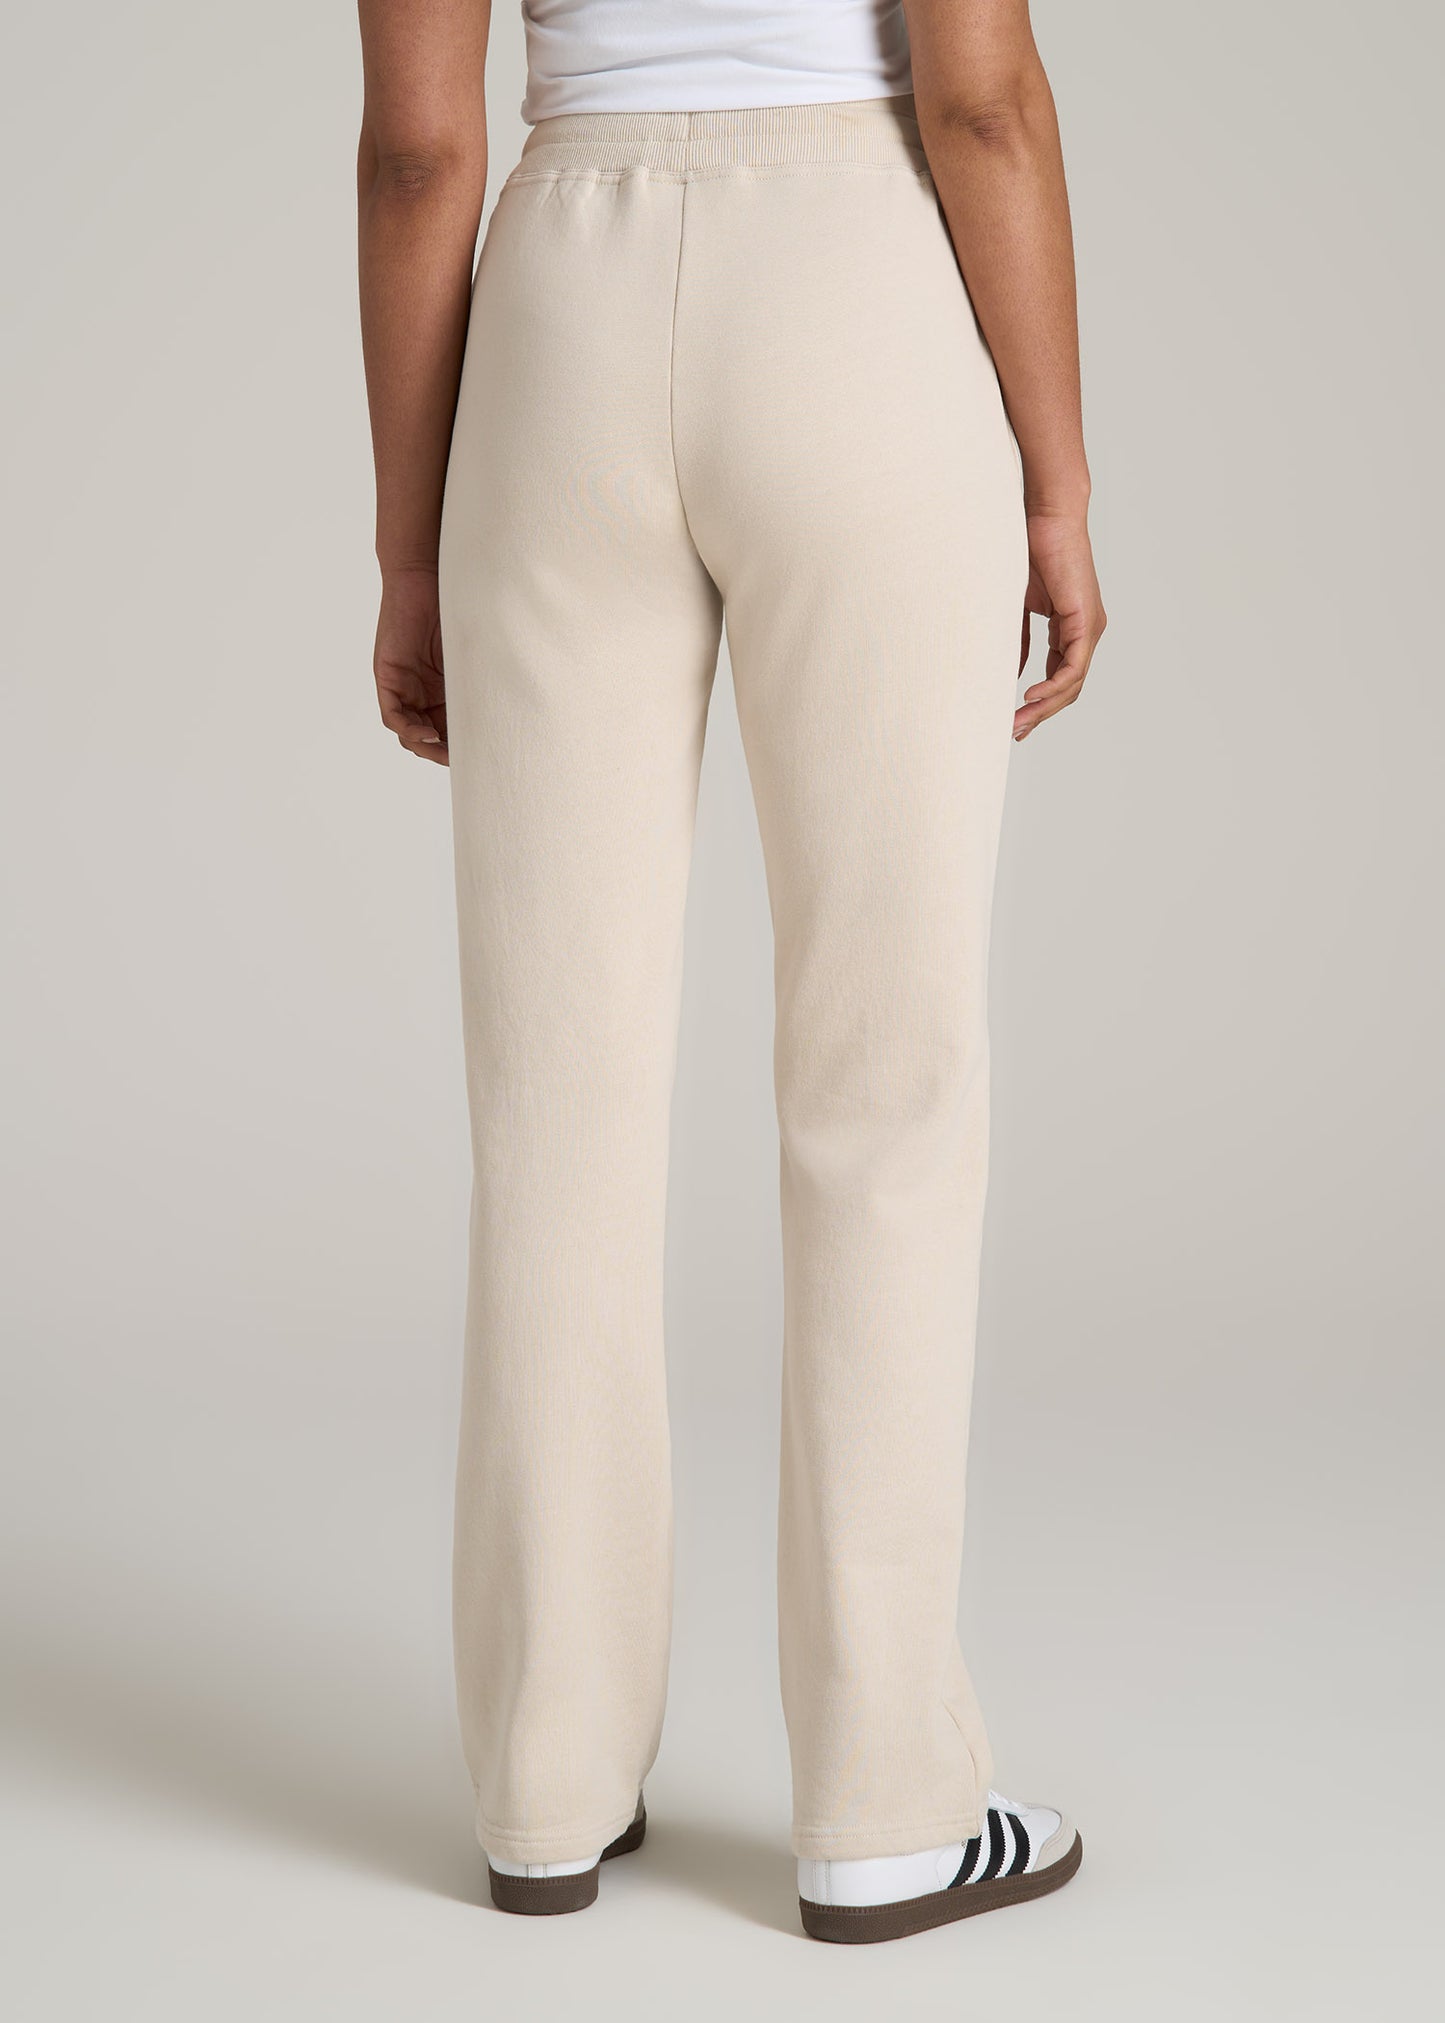 Wearever Fleece Open-Bottom Sweatpants for Tall Women in Light Stone